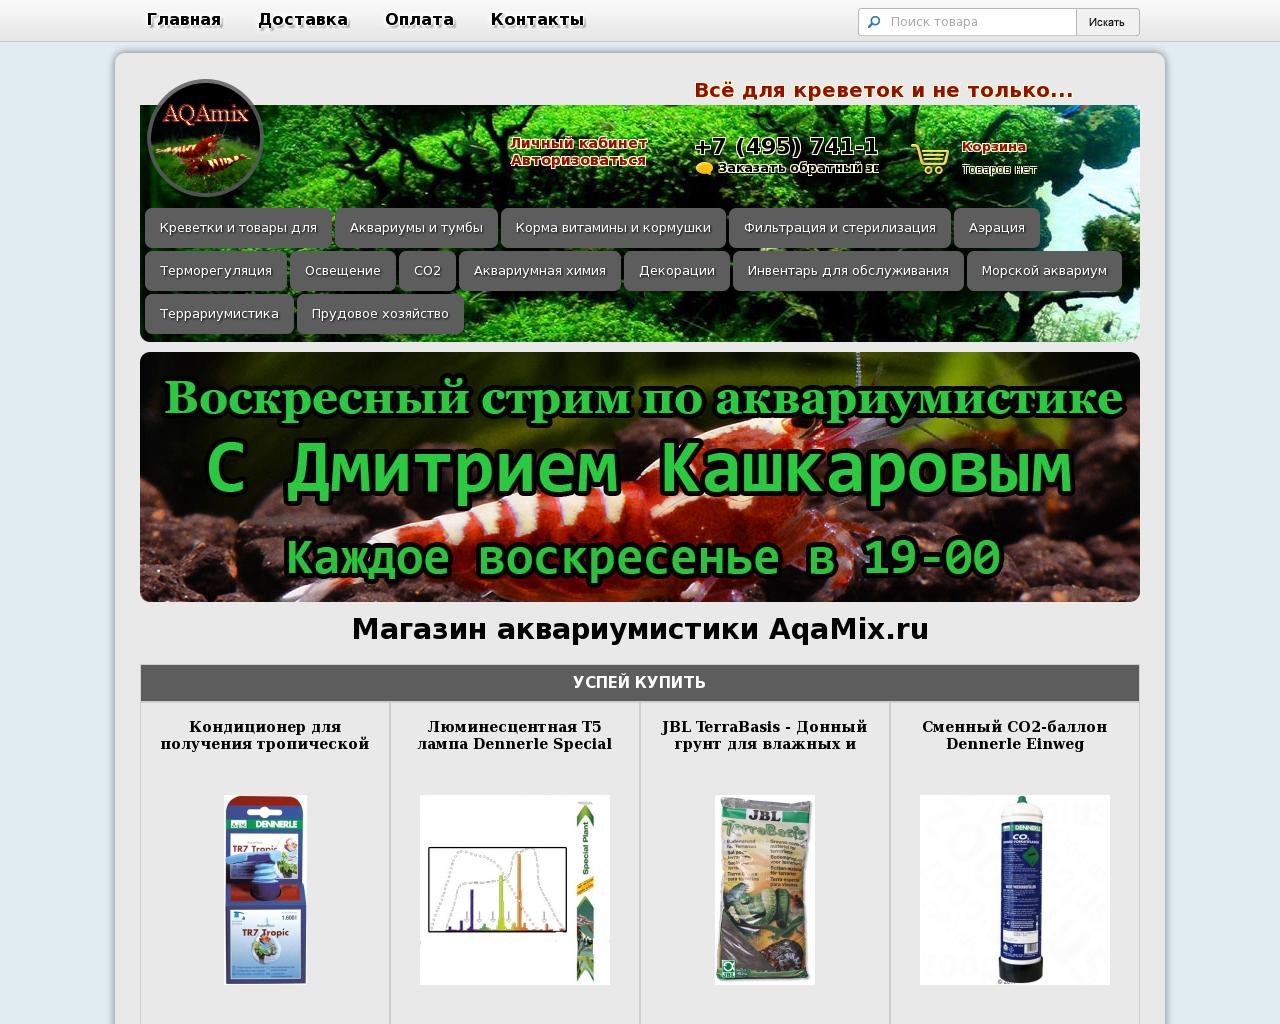 Изображение сайта aqamix.ru в разрешении 1280x1024